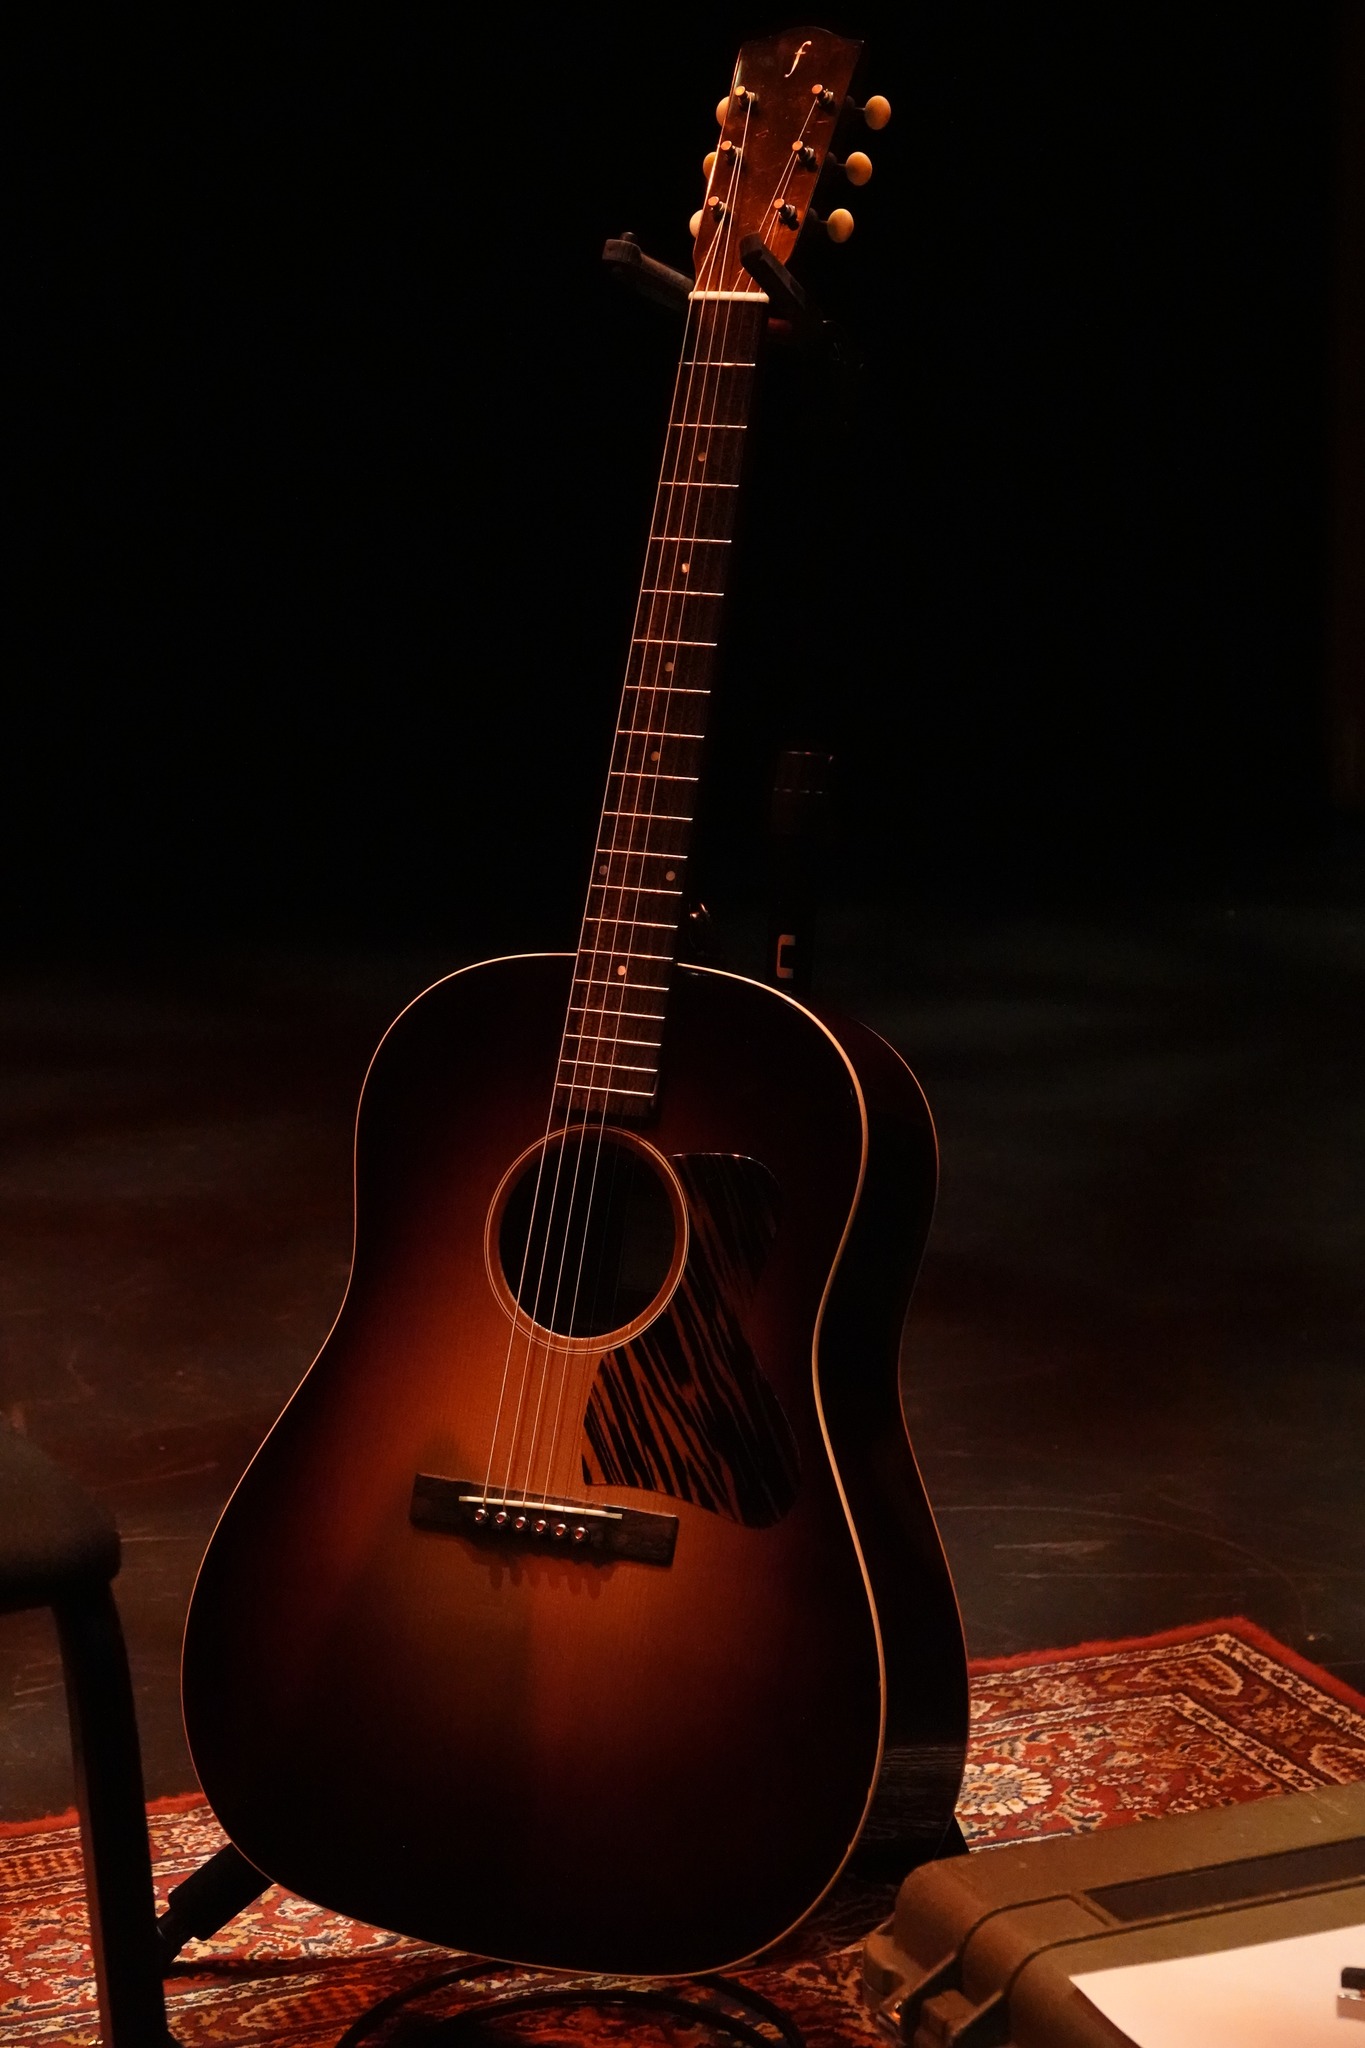 Jorma's guitar